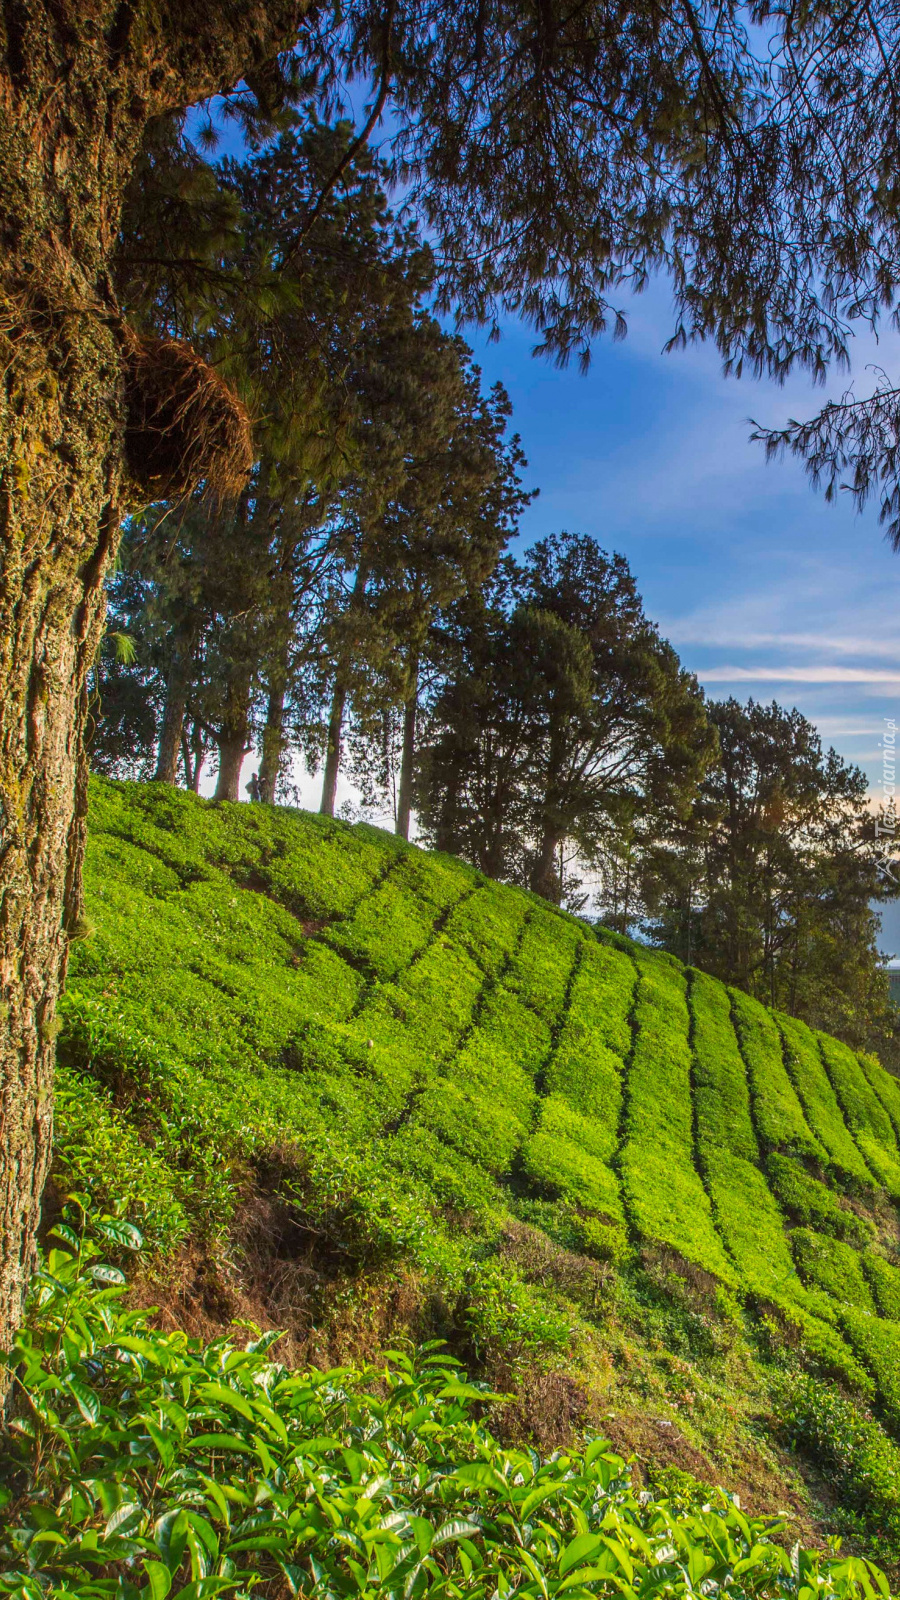 Plantacja herbaty w Malezji